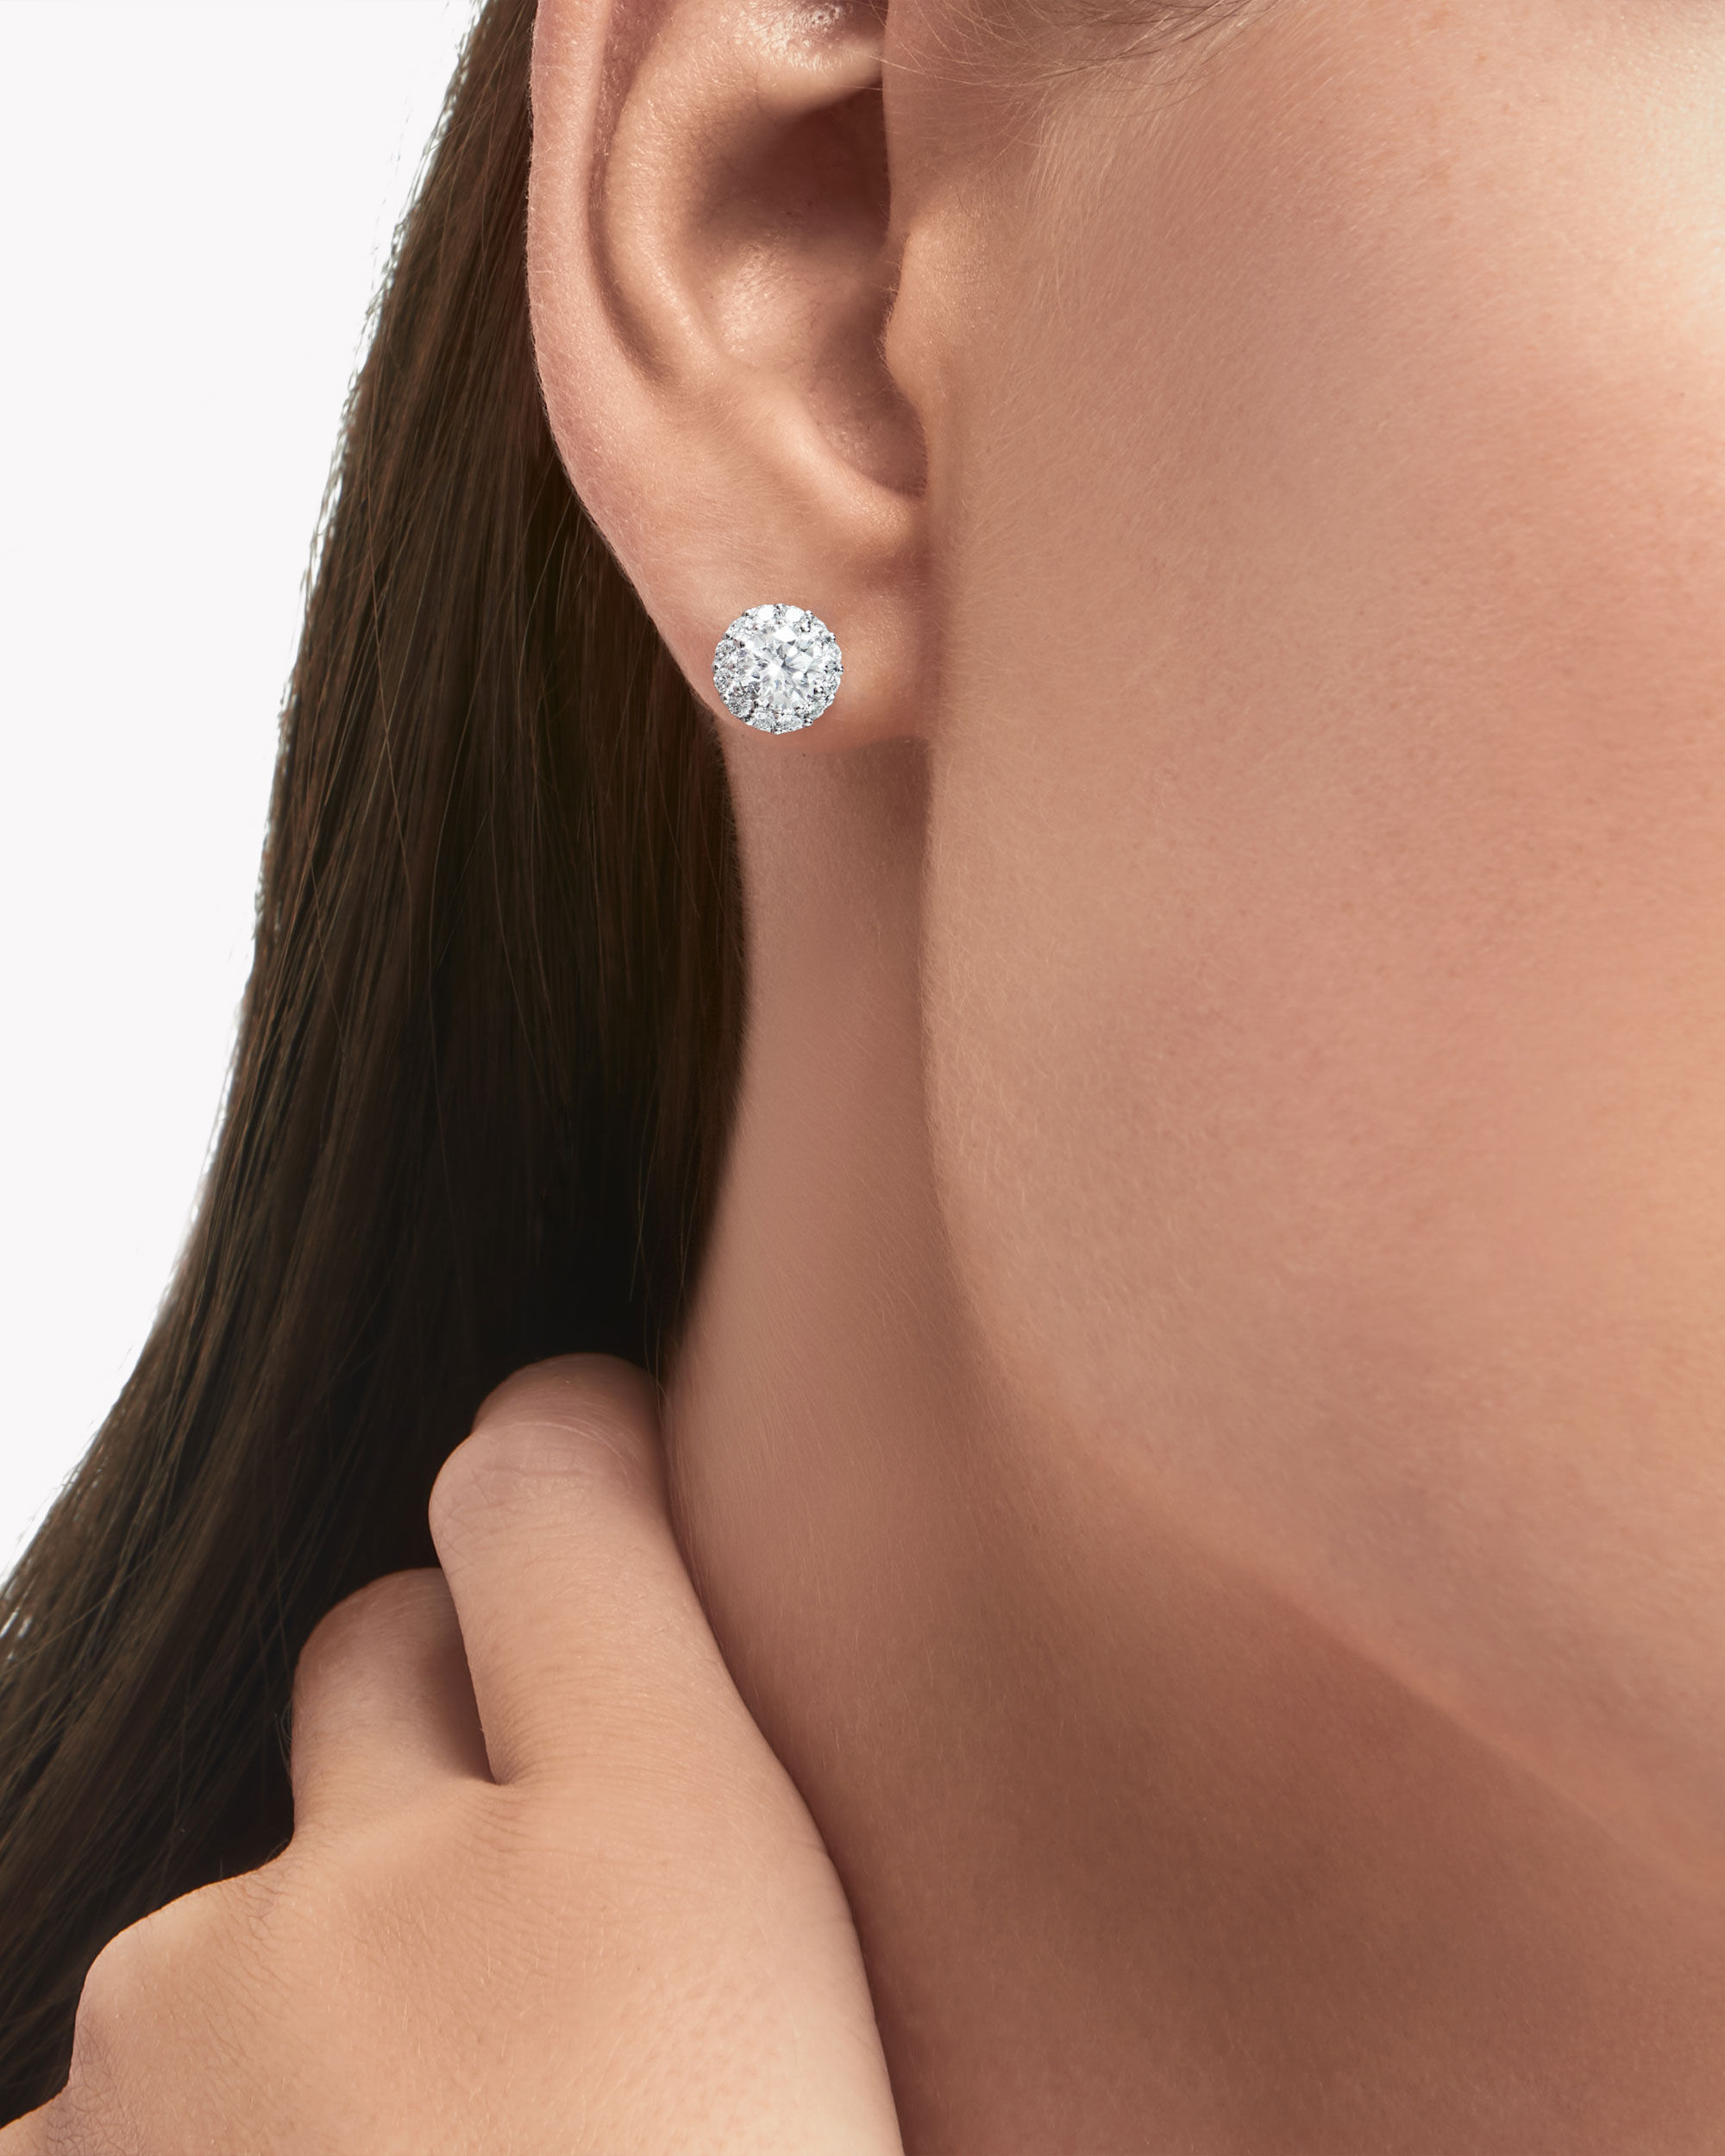 Model wear the Graff Jewellery collection diamond earrings 